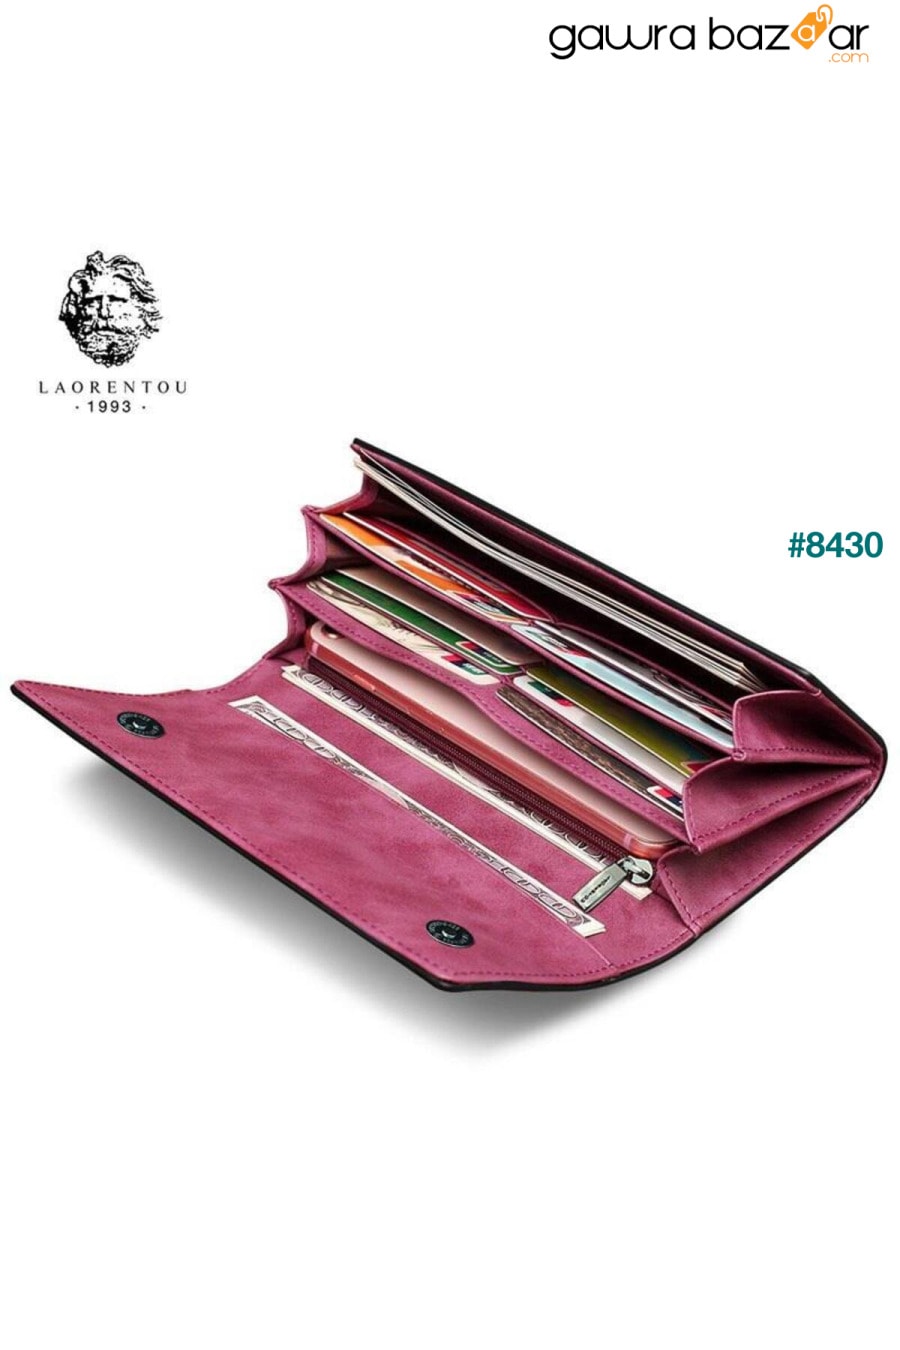 محفظة فريا النسائية طويلة مصنوعة من الجلد الطبيعي بمغناطيس مزدوج صناعة إيطالية - حامل بطاقات نسائي Laorentou 1